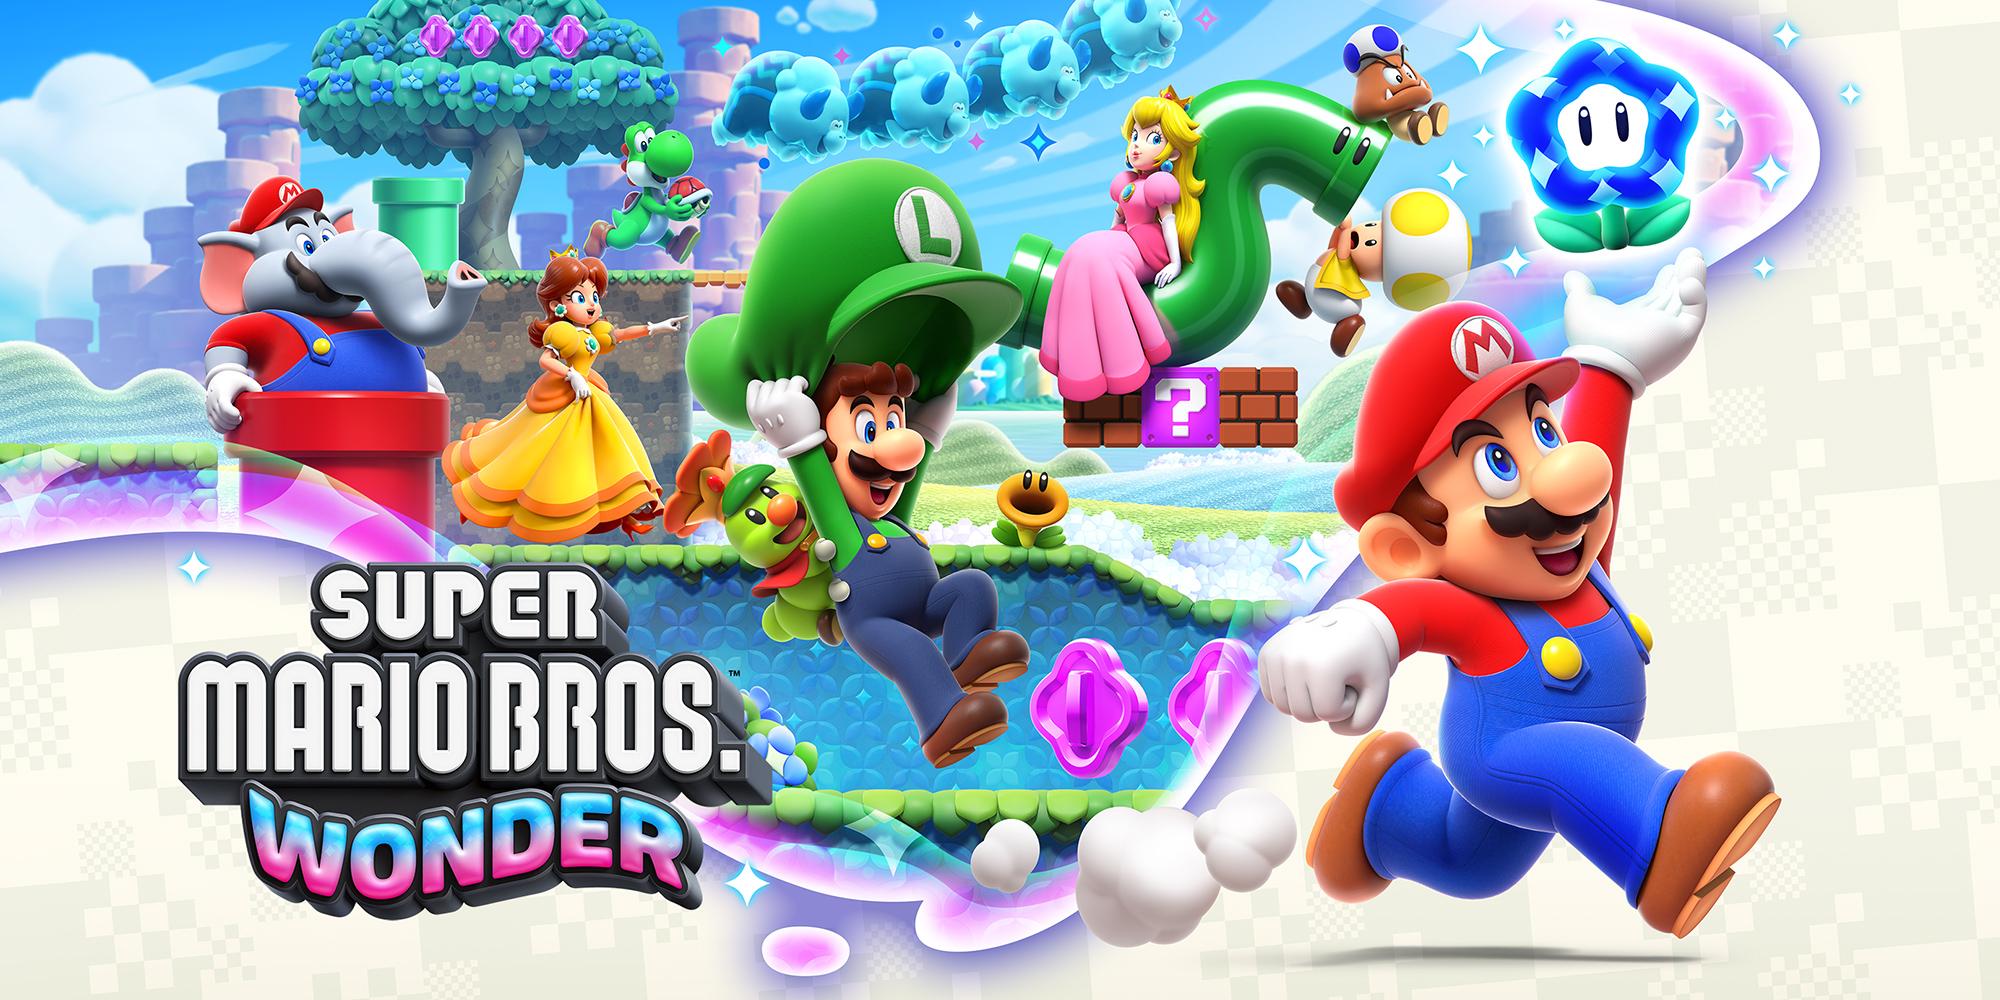 Novo game da Nintendo, Super Mario Wonder já ultrapassou 4 milhões de unidades vendidas mundialmente.